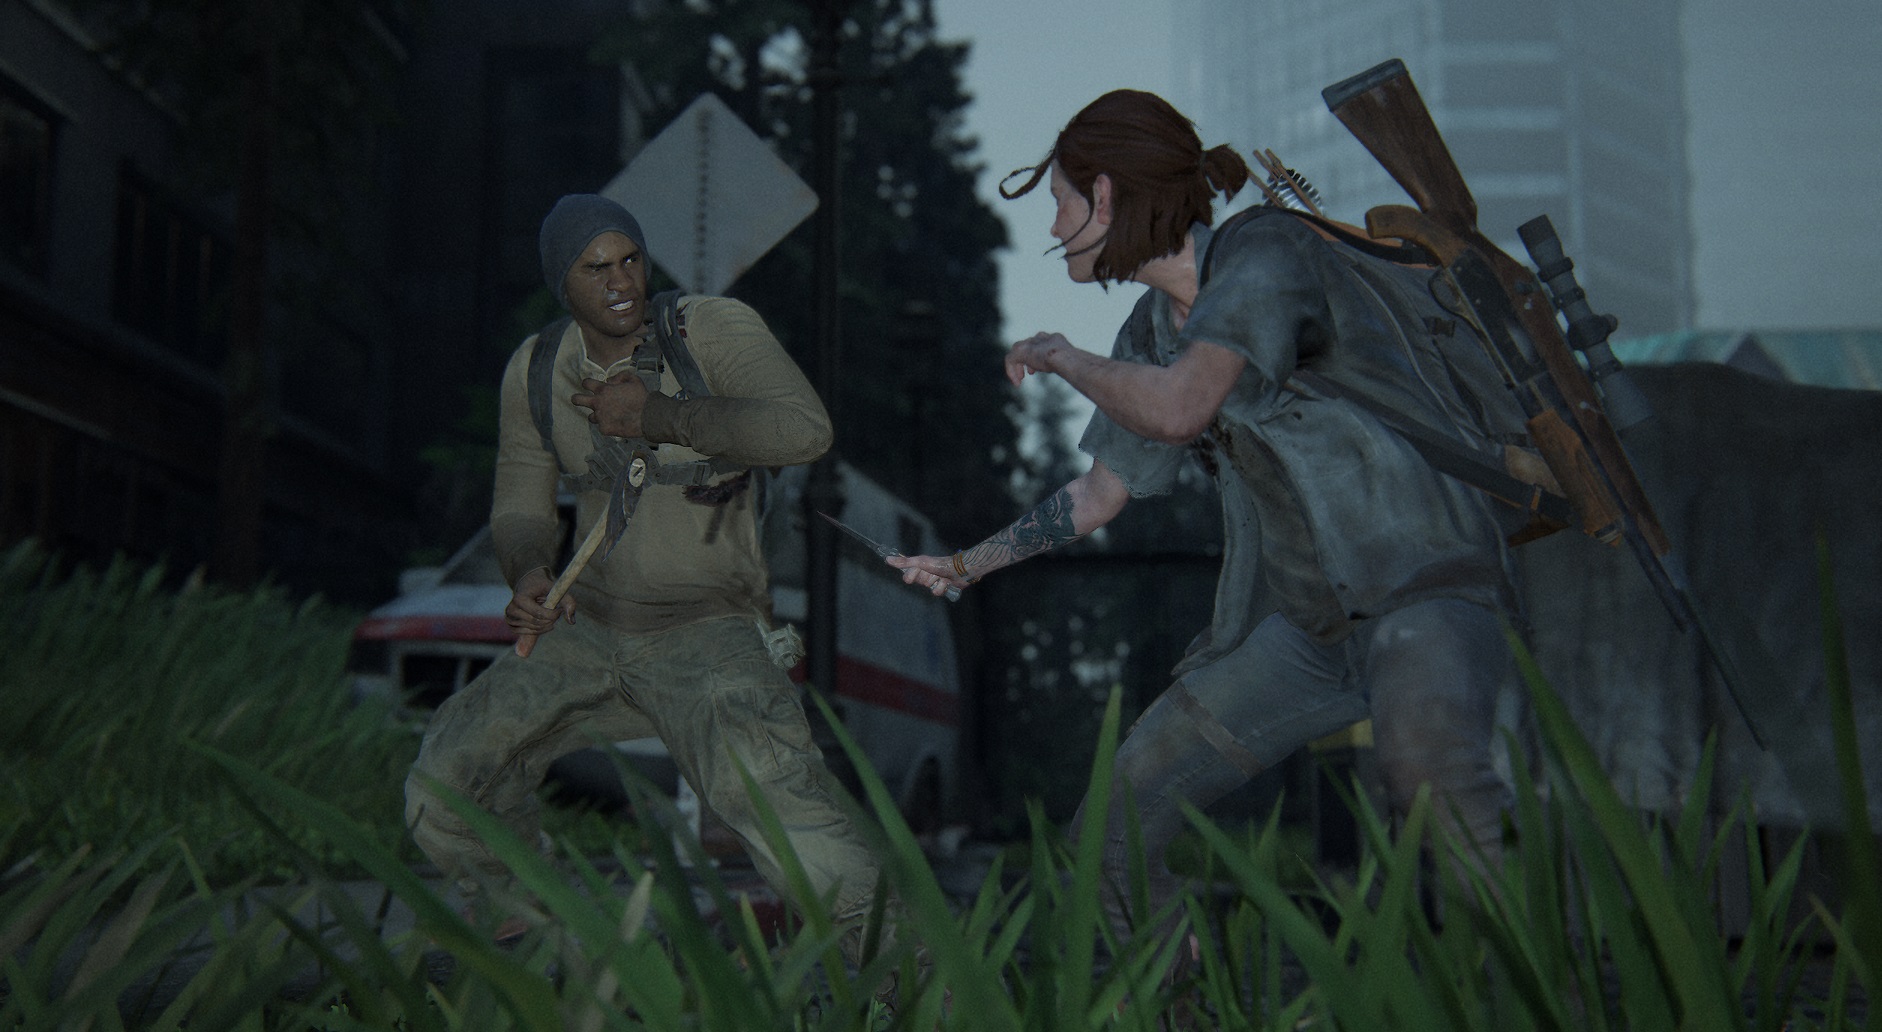 Превью после 3 часов в The Last of Us: Part 2 — впечатления и главные наблюдения - фото 3